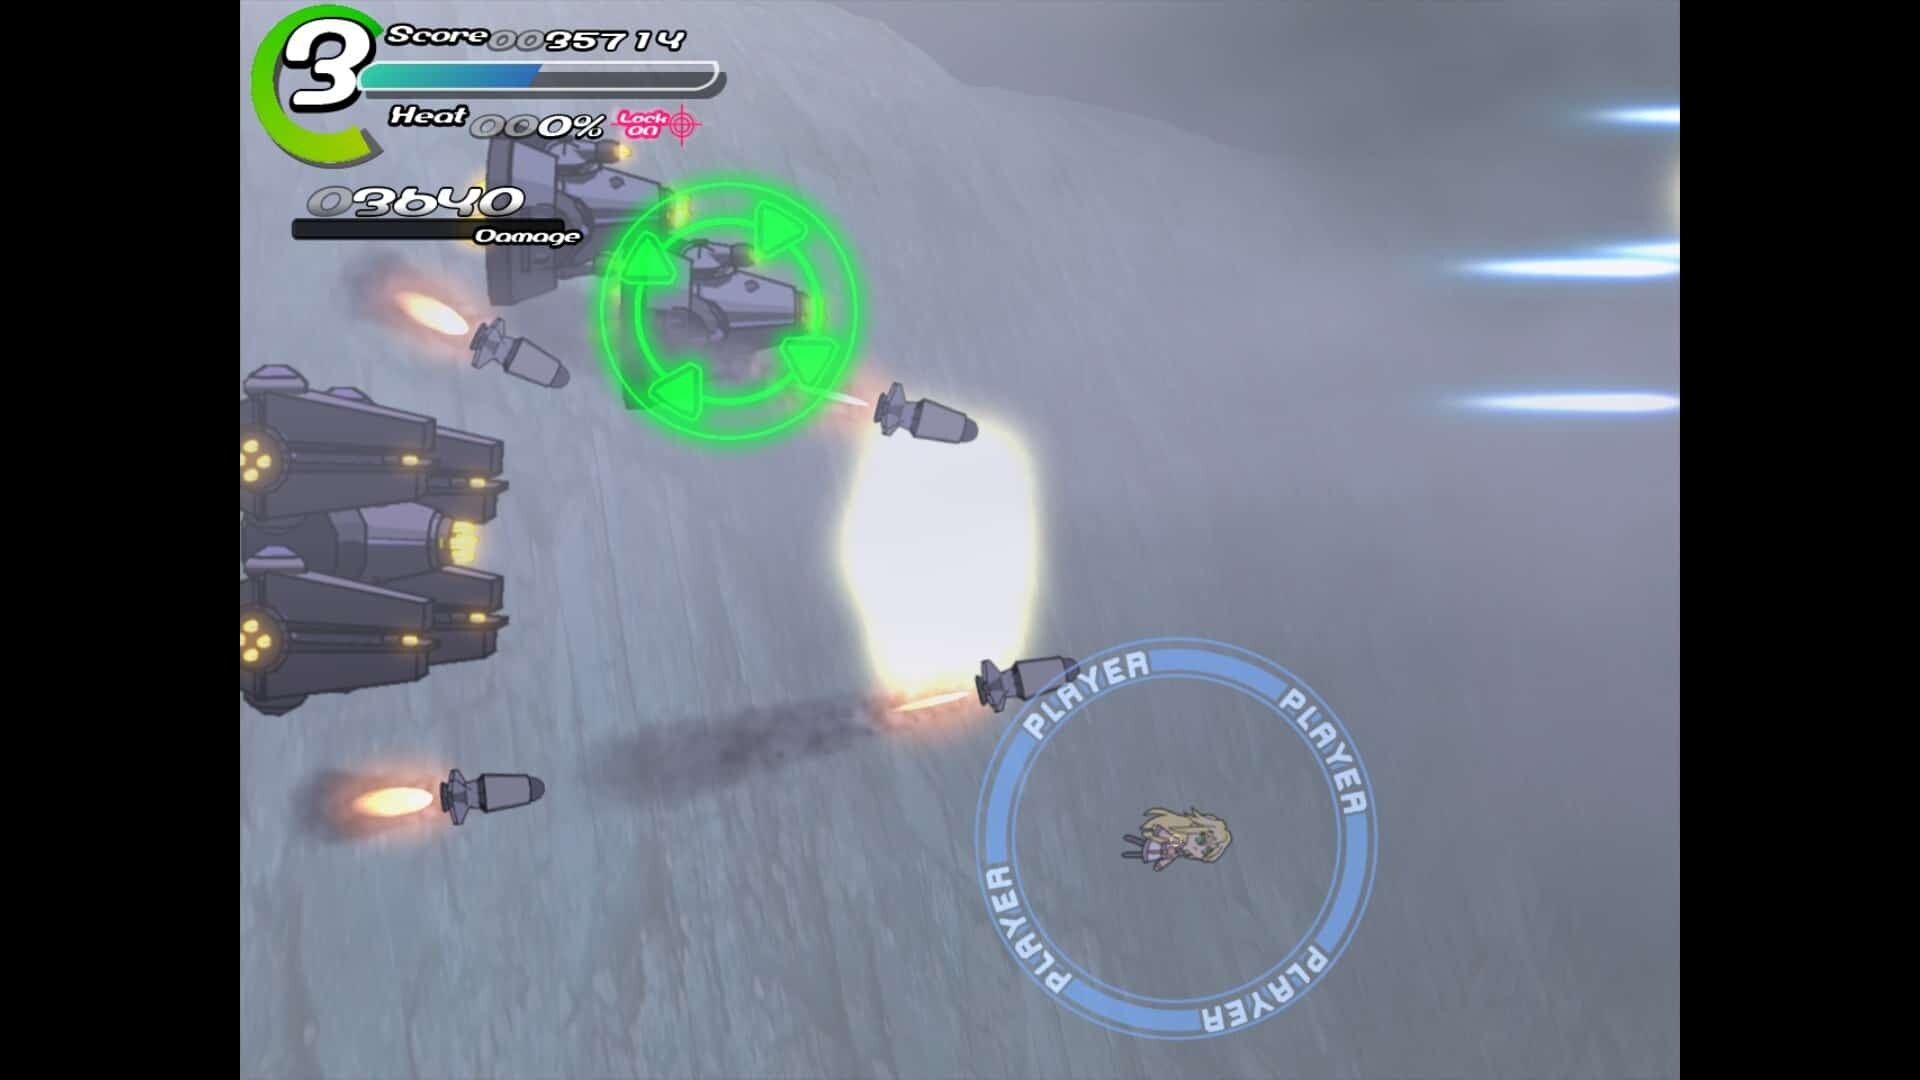 Sora game screenshot, dodging missiles